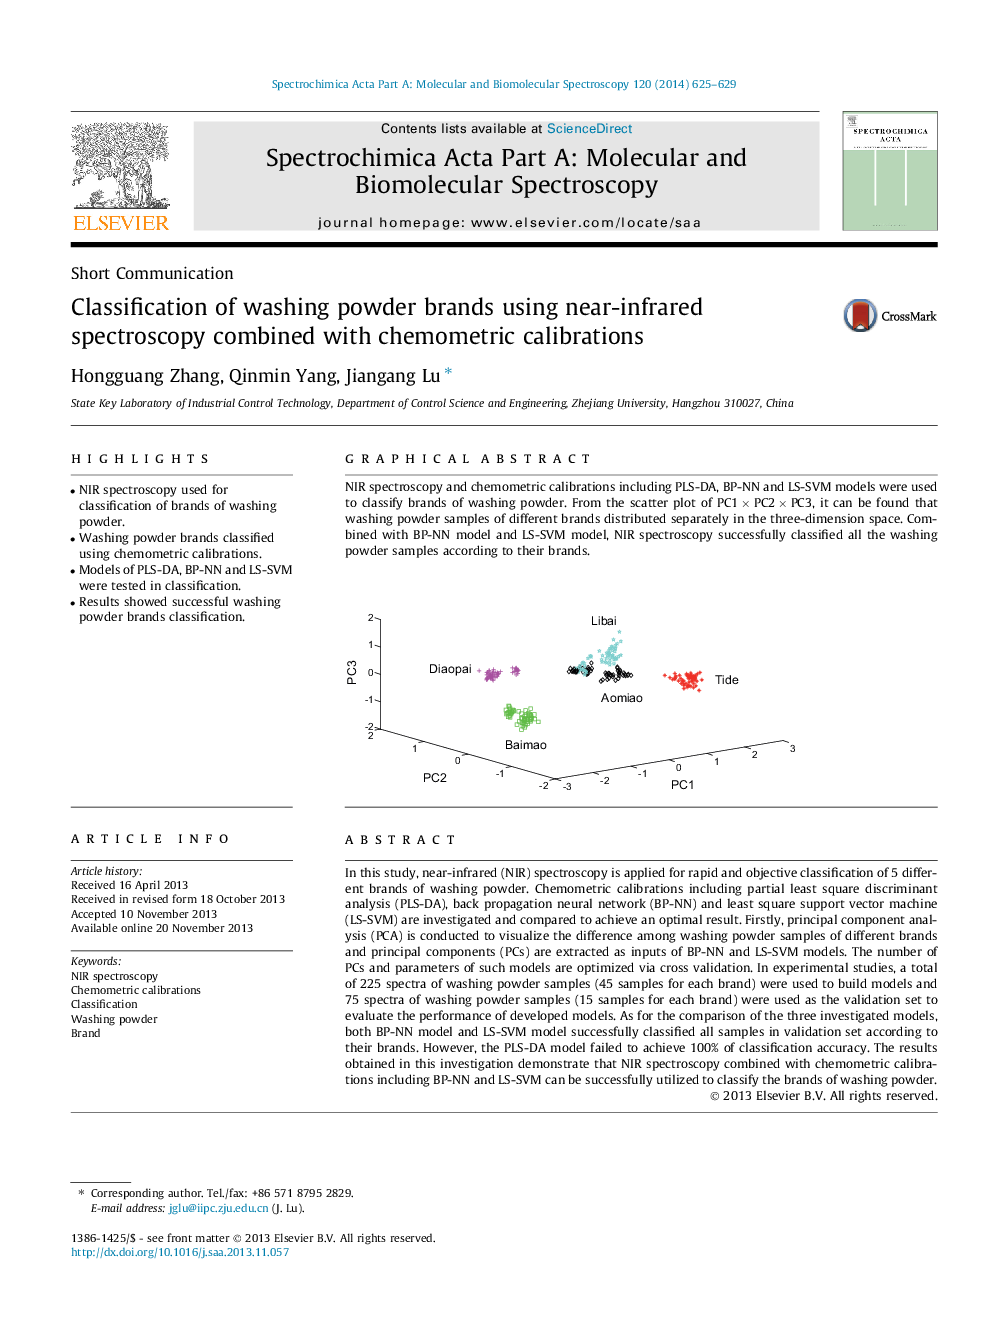 طبقه بندی مارک های پودر شستشو با استفاده از طیف سنجی نزدیک به مادون قرمز همراه با کالیبراسیون شیمیایی 